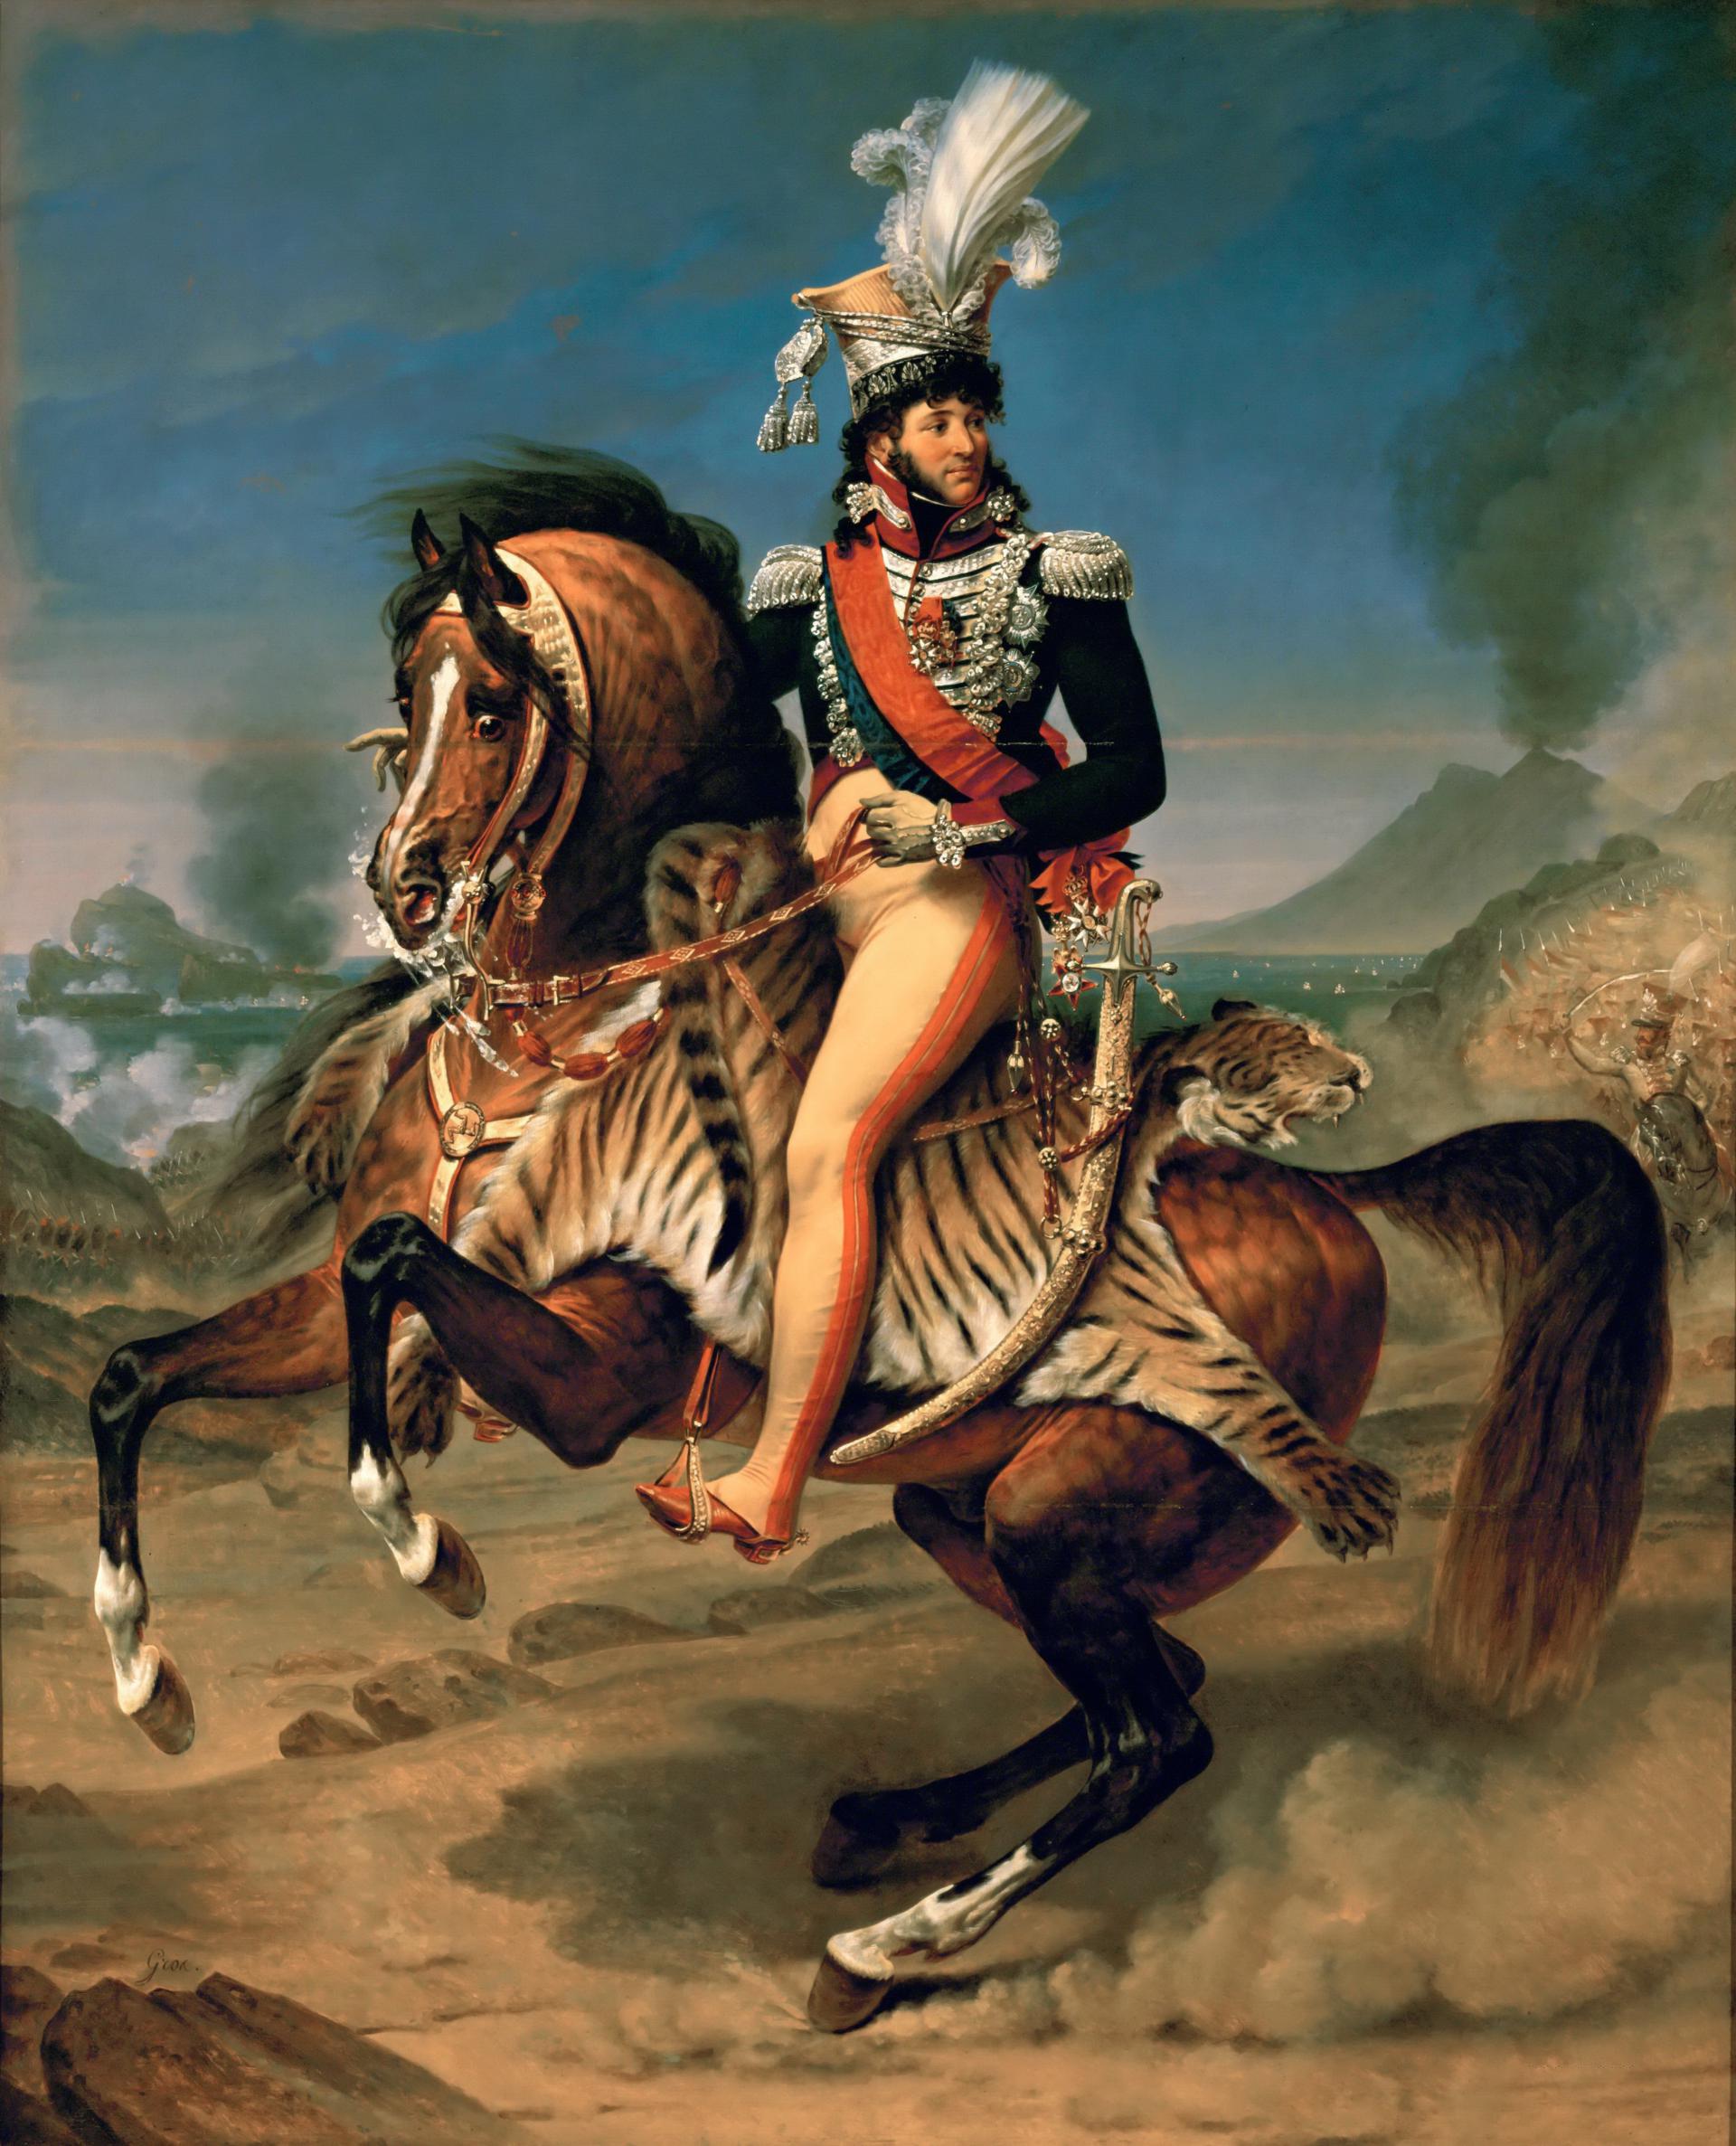 0008_格罗_Antoine-Jean Gros 1771-1835 —— Joachim Murat  King of Naples  Marshall of France  on Horseback_3489x4312PX_TIF_72DPI_44_0